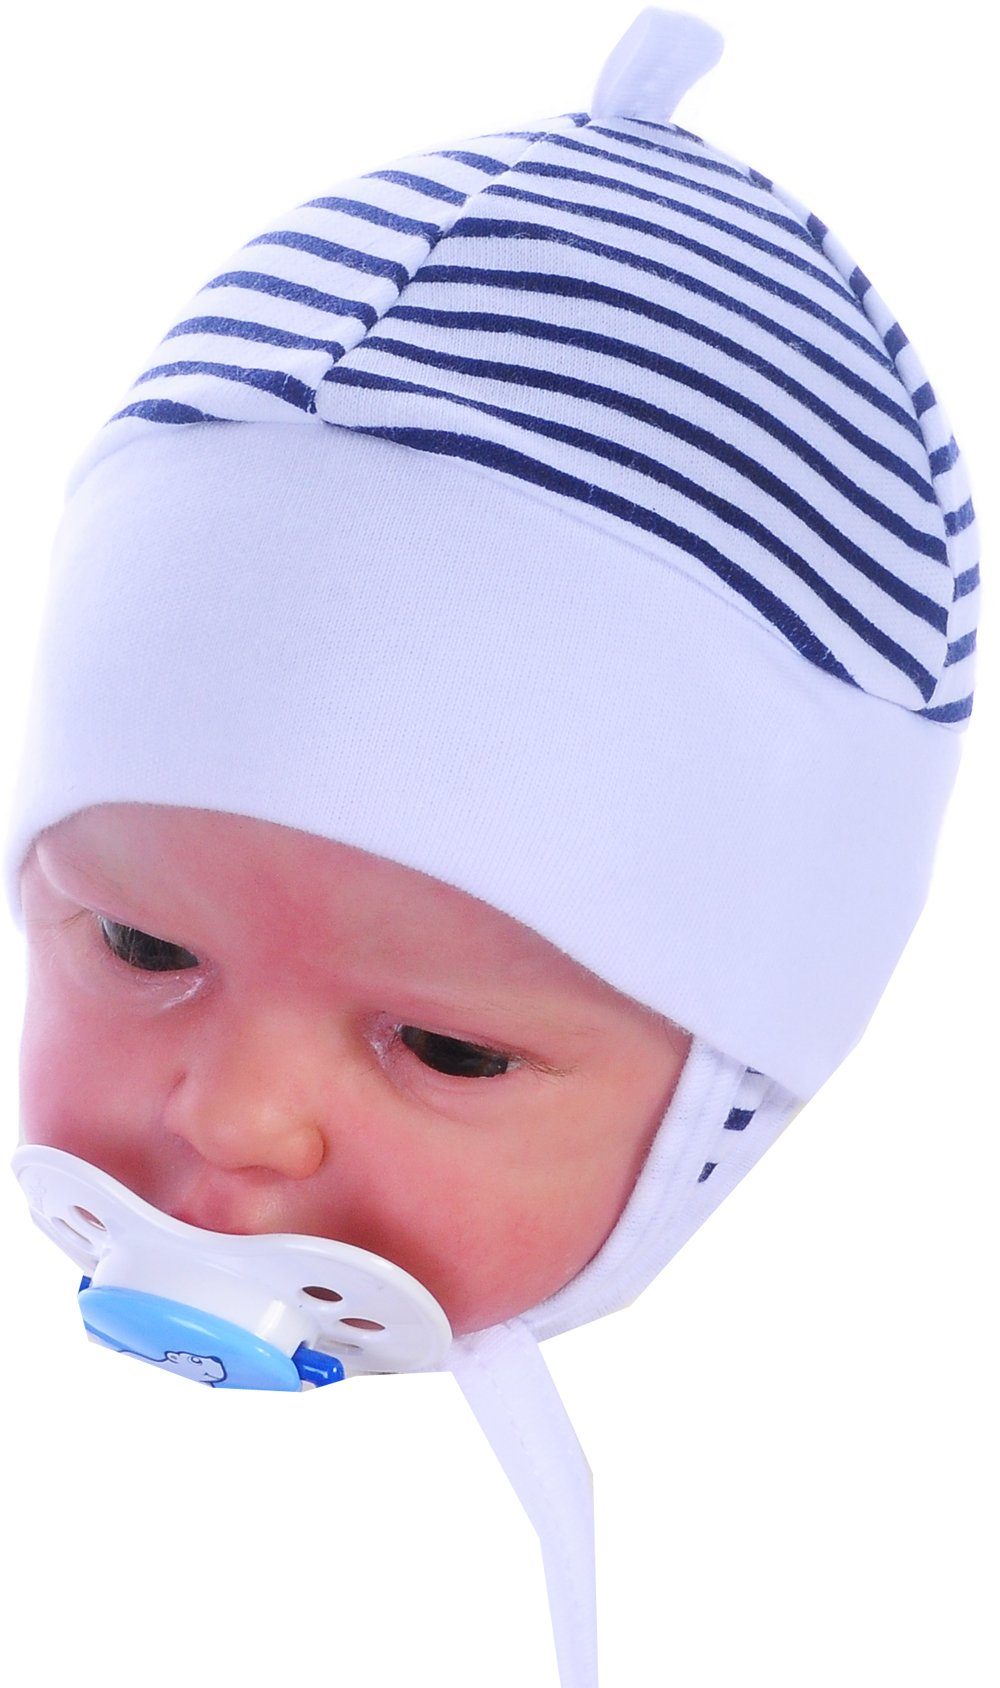 La Bortini Erstlingsmütze Mütze für Neugeborene Babymütze Baby Haube 32 34 36 38 40 50 56 62 68